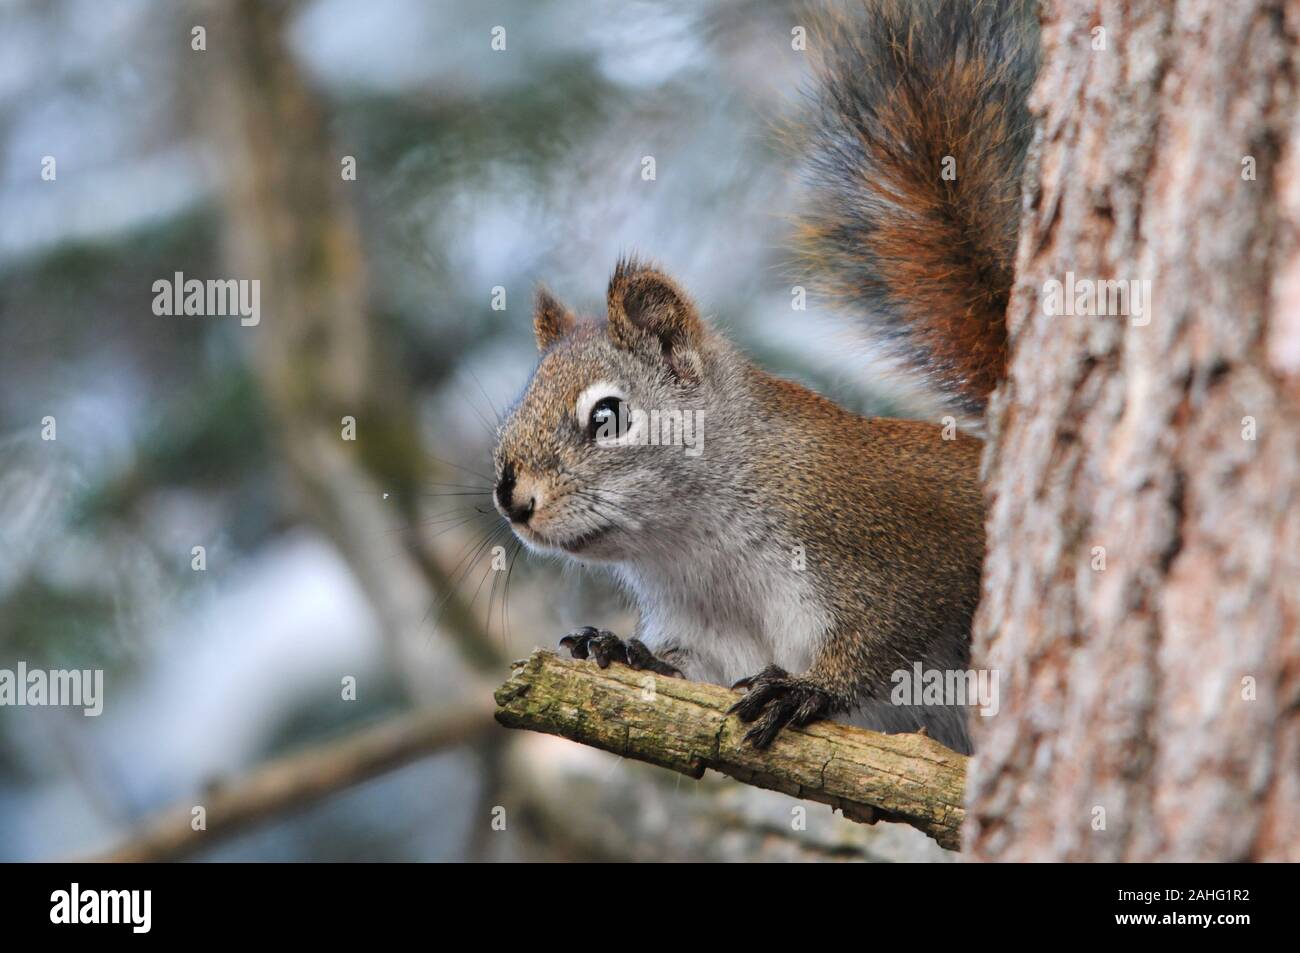 Eichhörnchen Tier in der Nähe Profil ansehen Sitzen auf einem Ast mit bokeh Hintergrund seiner Umgebung und Umwelt. Stockfoto